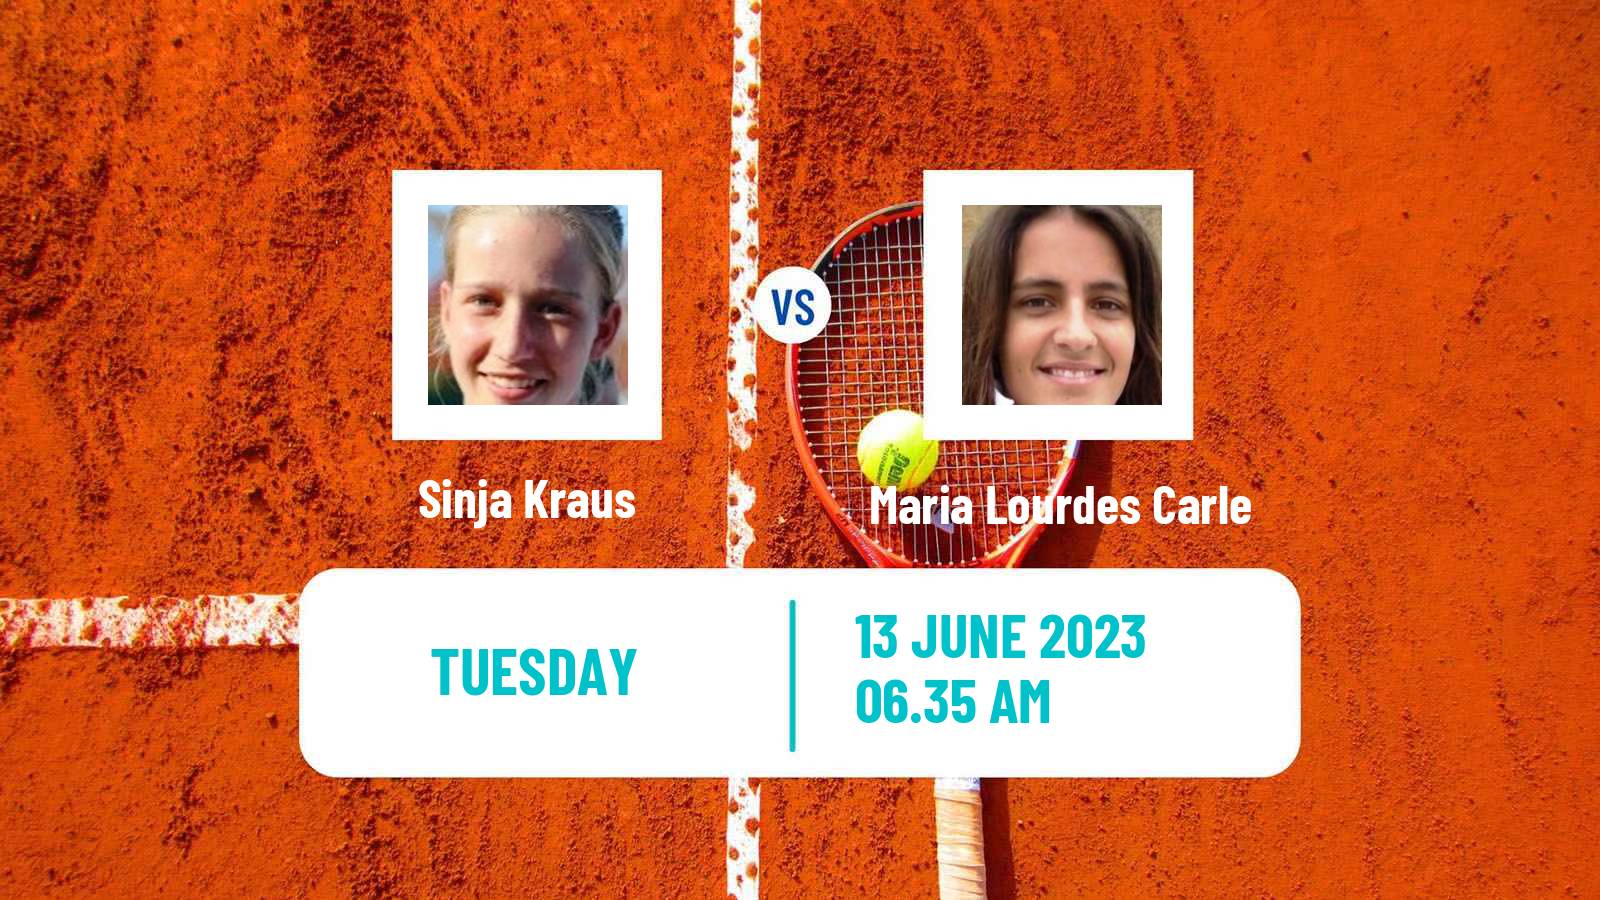 Tennis Valencia Challenger Women Sinja Kraus - Maria Lourdes Carle